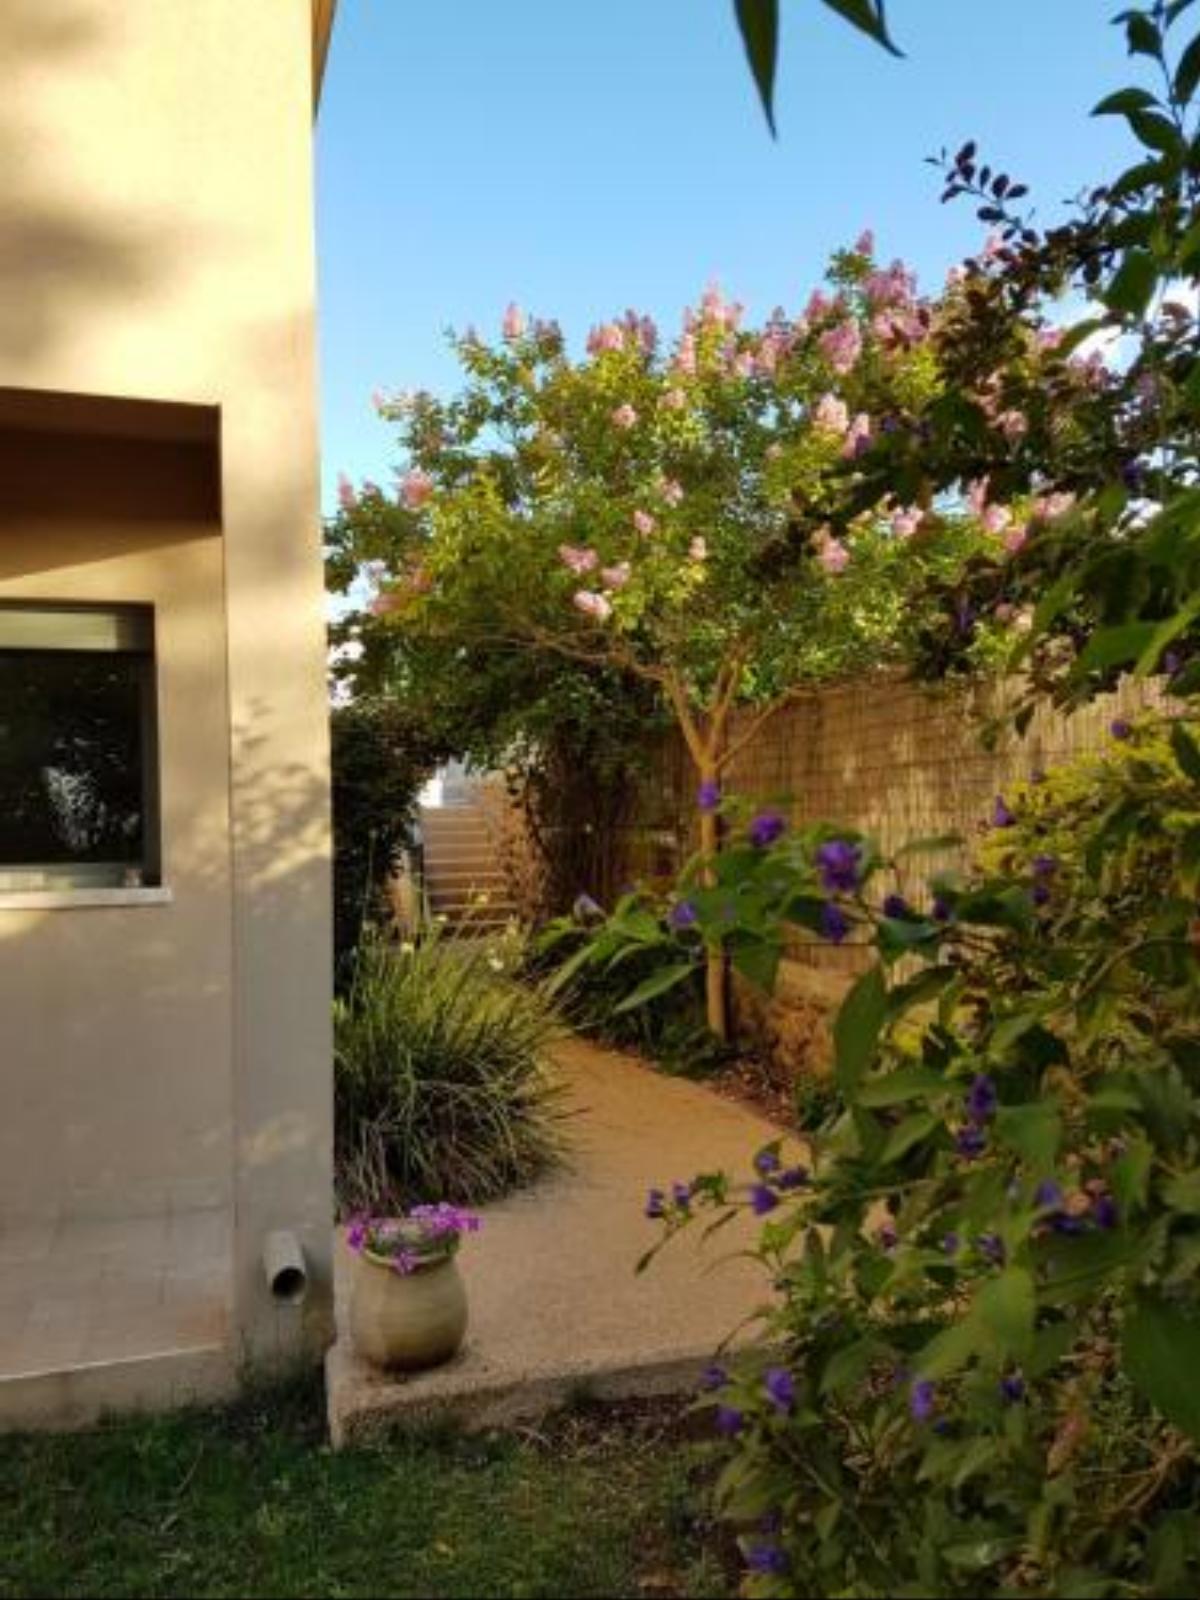 Villa On the Cliff Hotel Bruchim Qela' Alon Israel